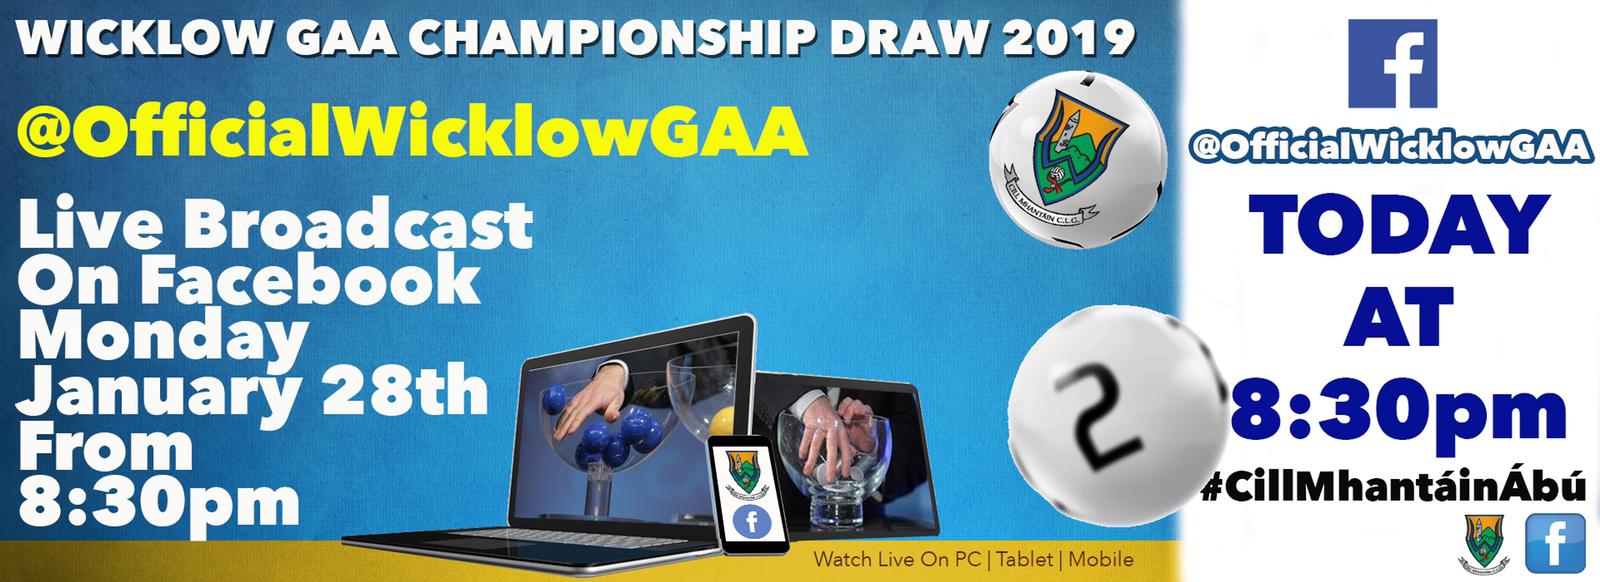 Wicklow GAA Championship Draws 2019 Live